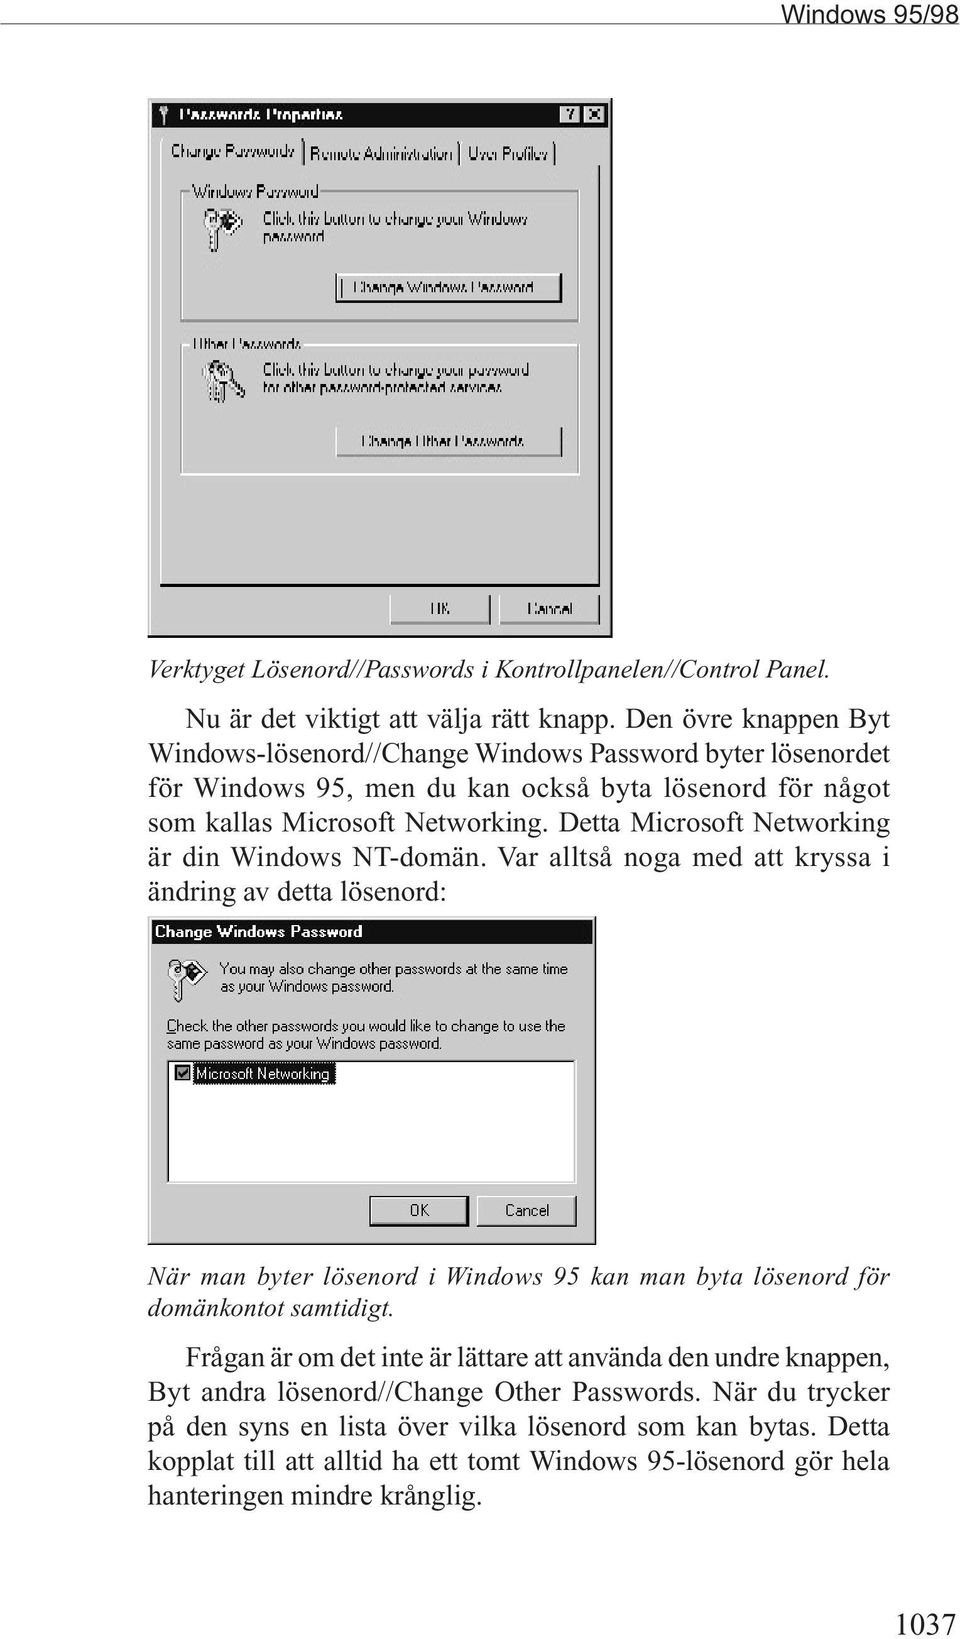 Detta Microsoft Networking är din Windows NT-domän.